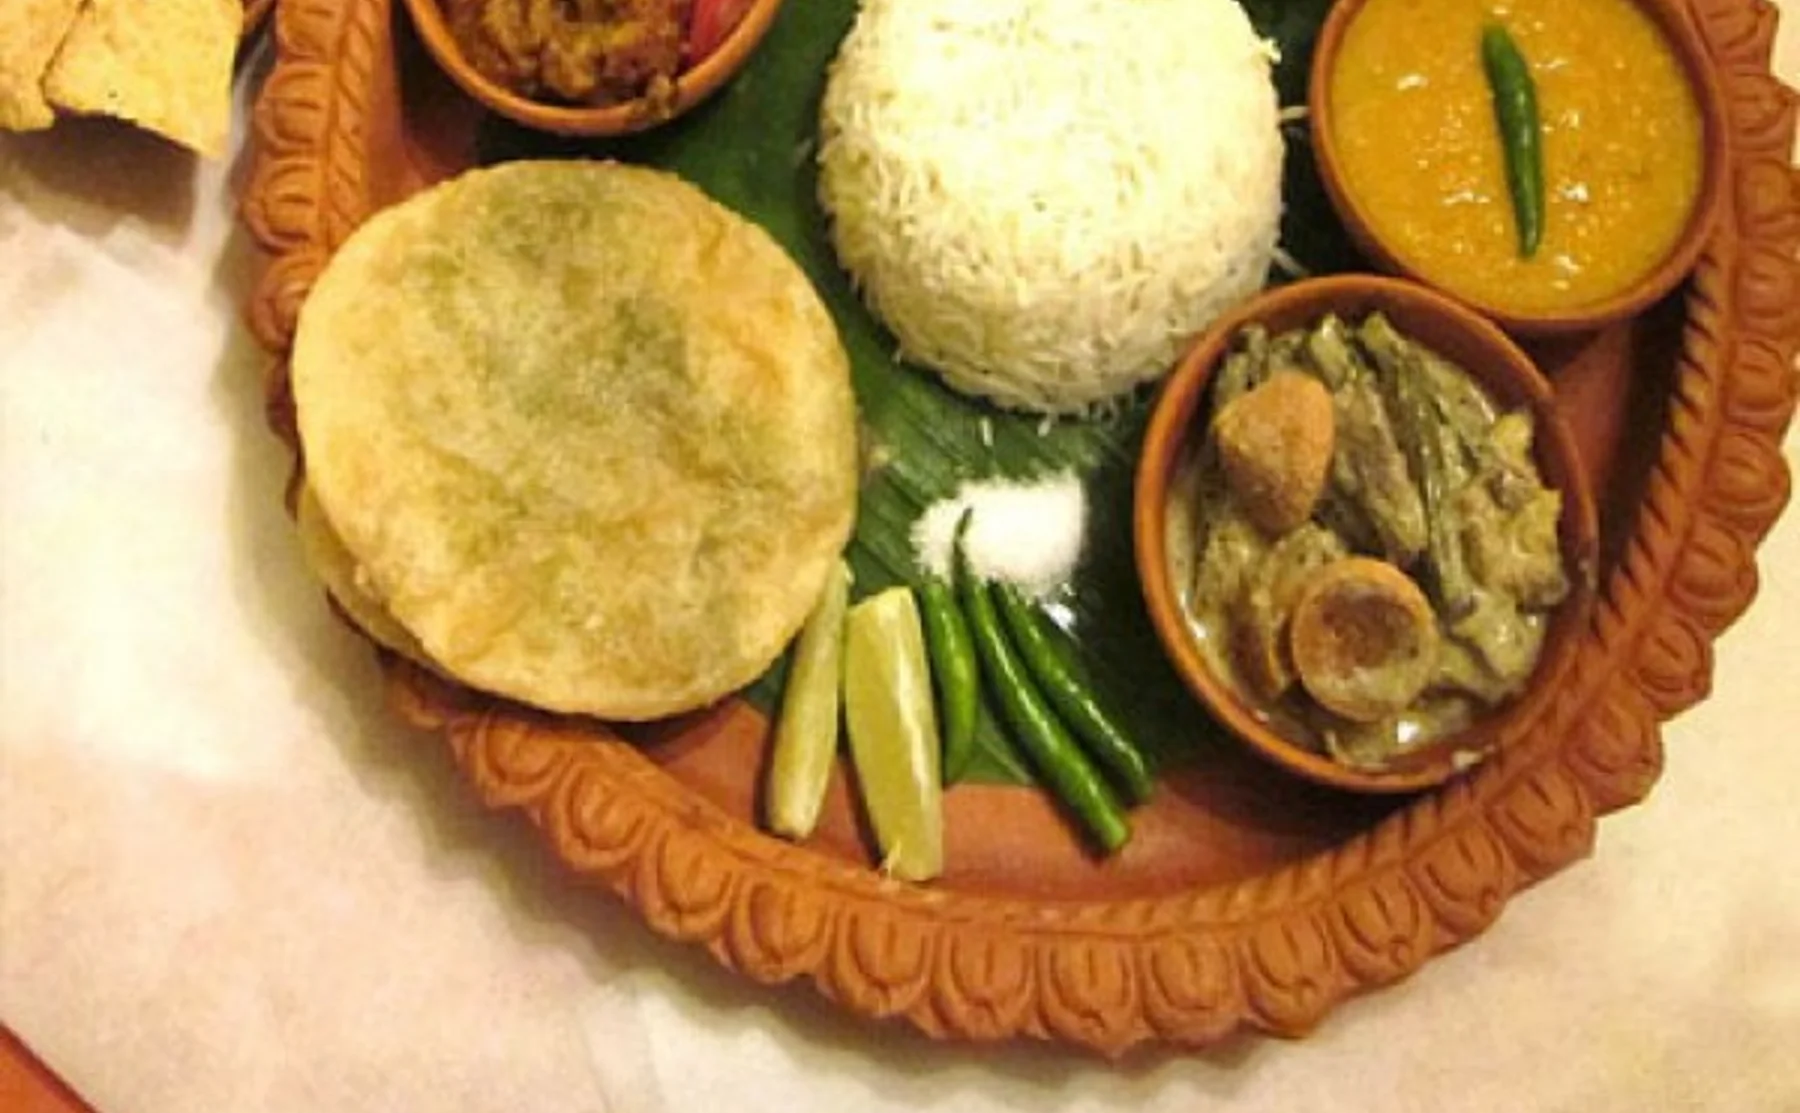 Taste the Grandma's food of Bengal. (East India) - 455481